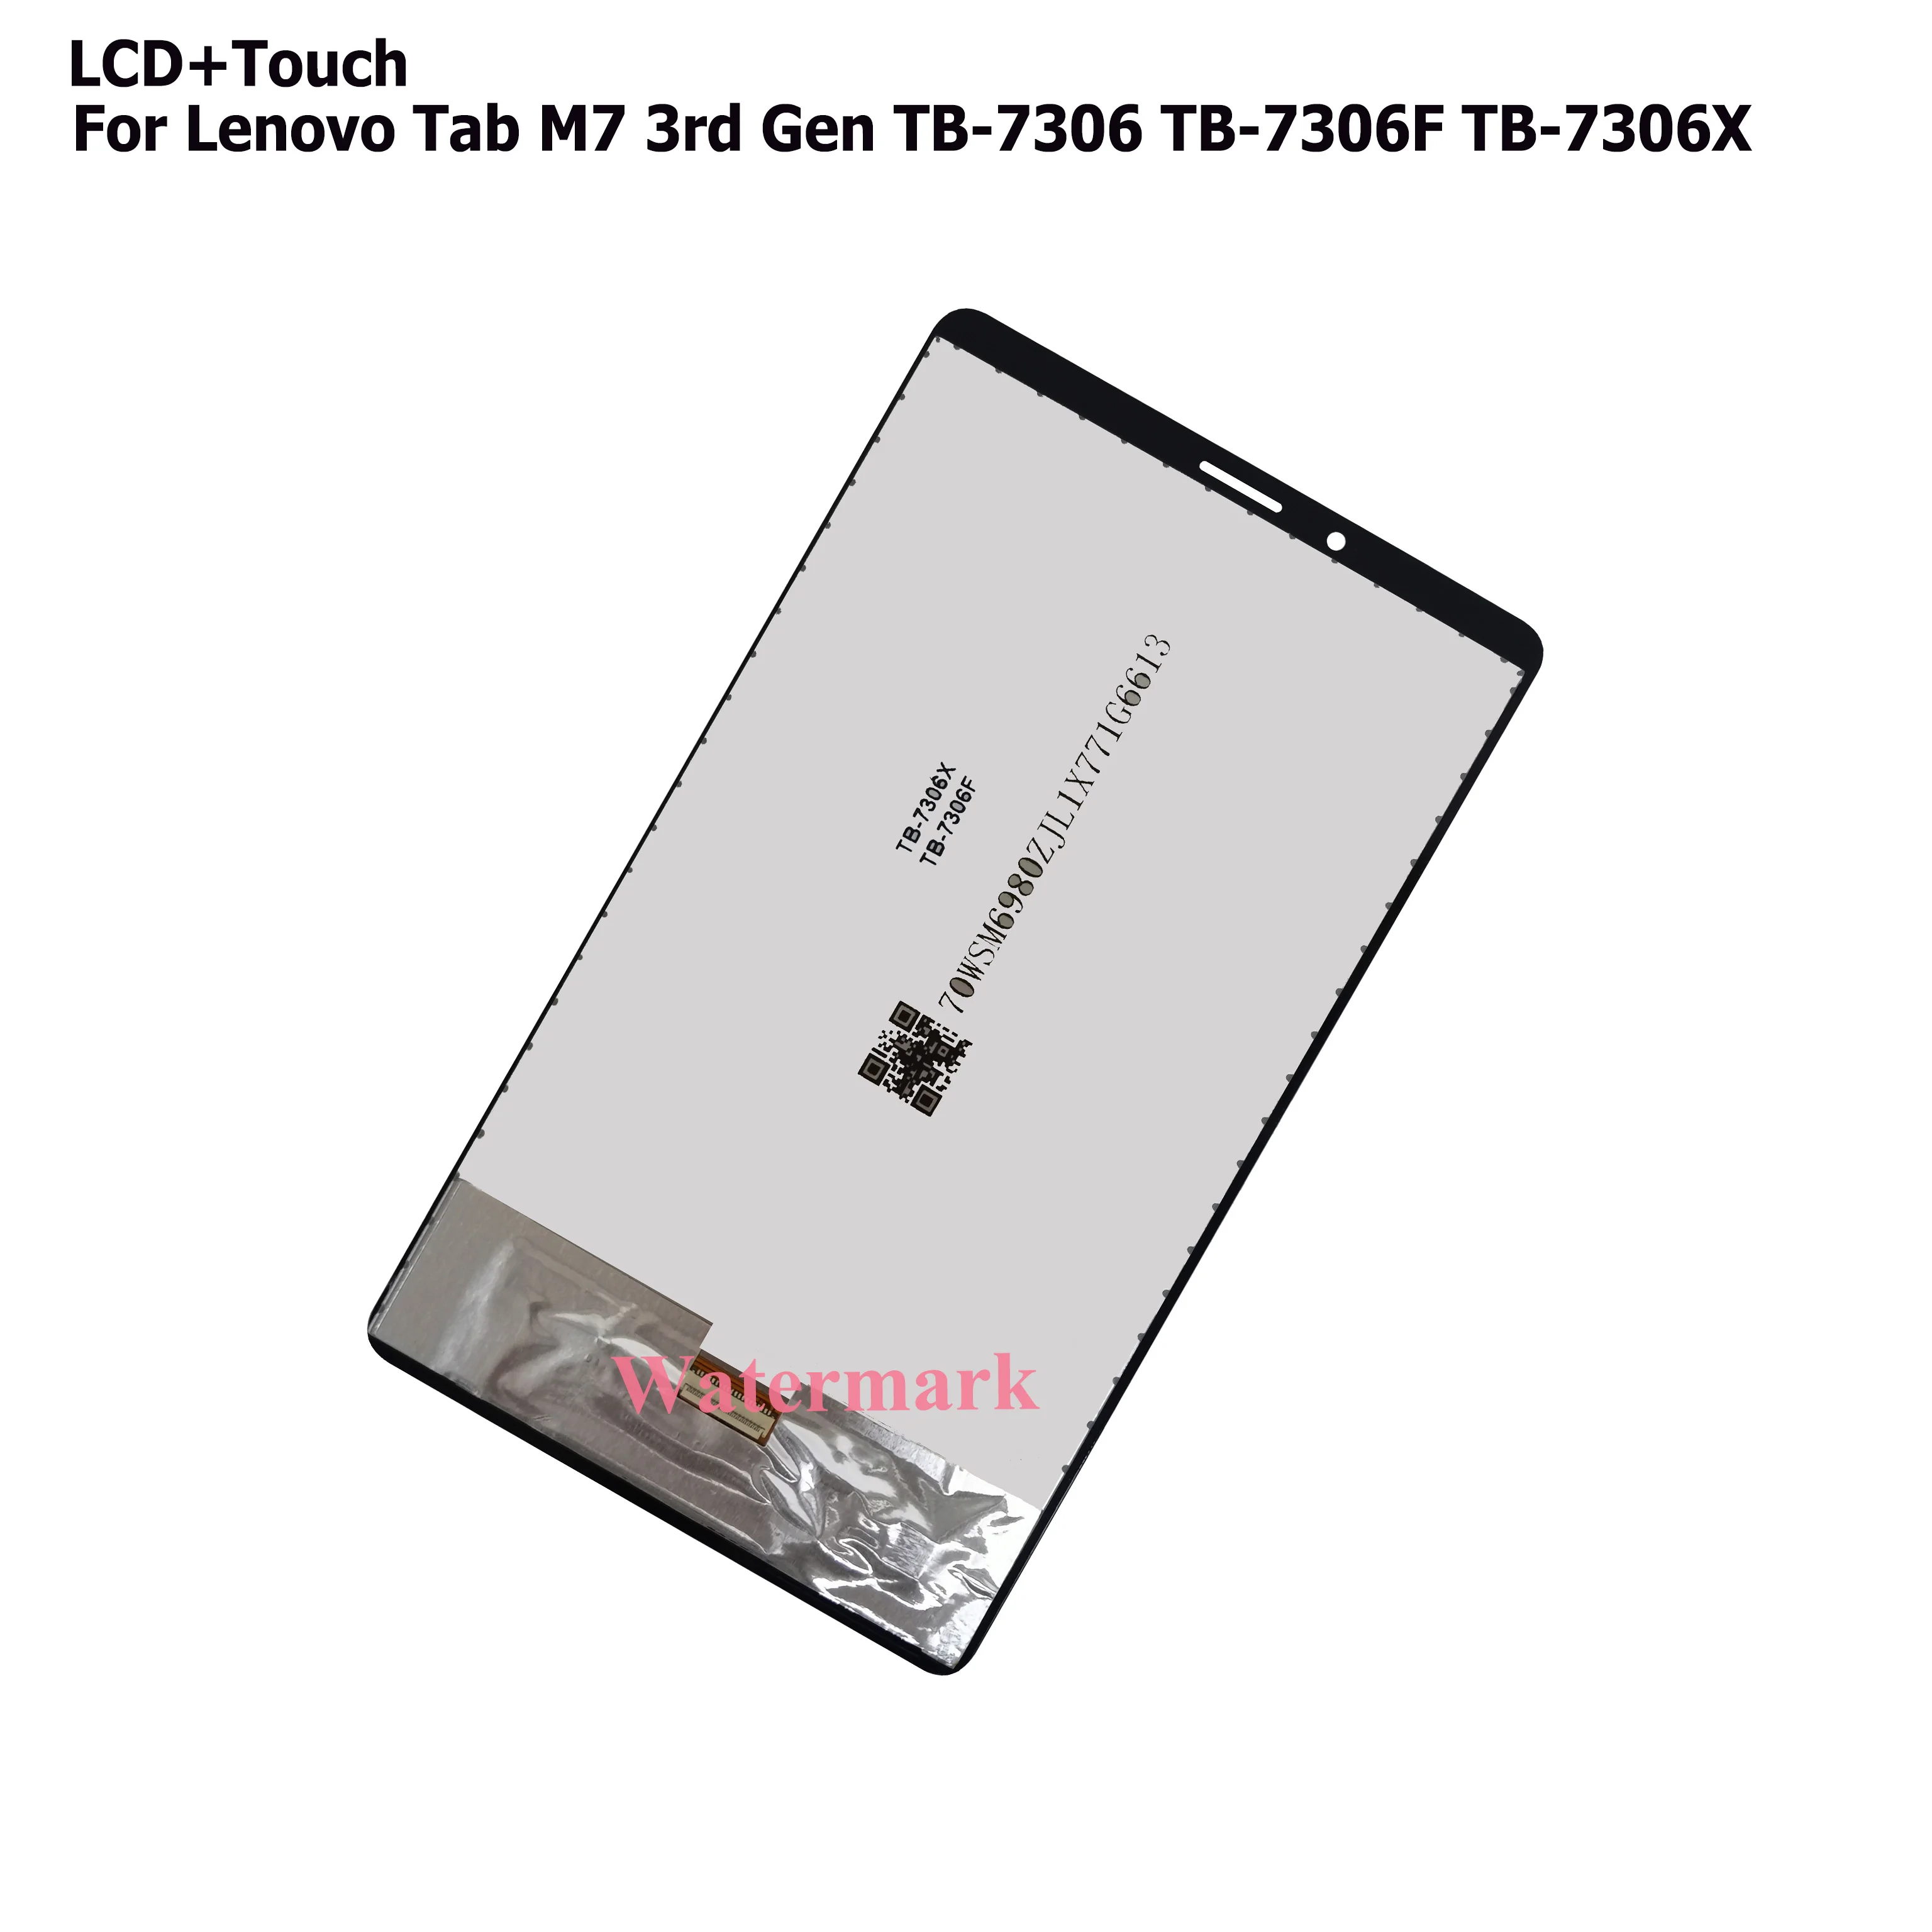 Module LCD + Touch pour Lenovo M7 TB-7306F 3eme gen